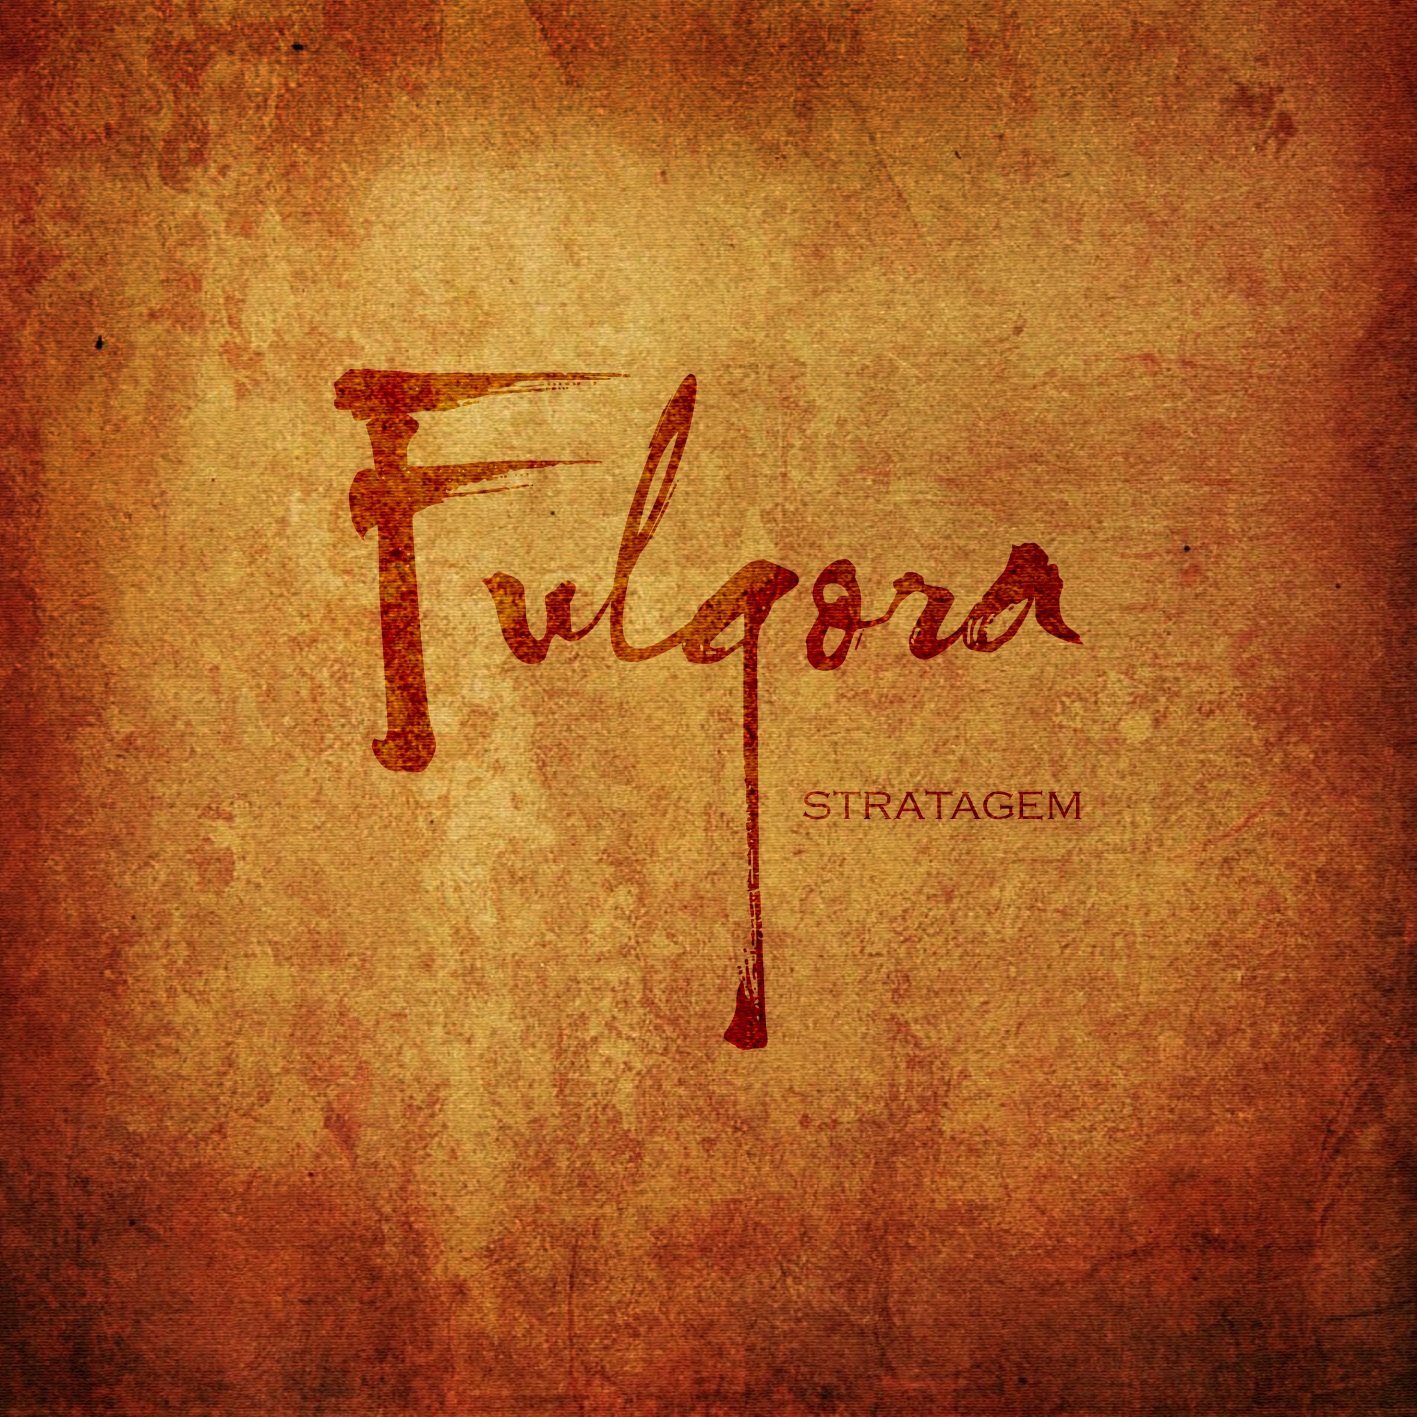 Fulgora – Stratagem Review